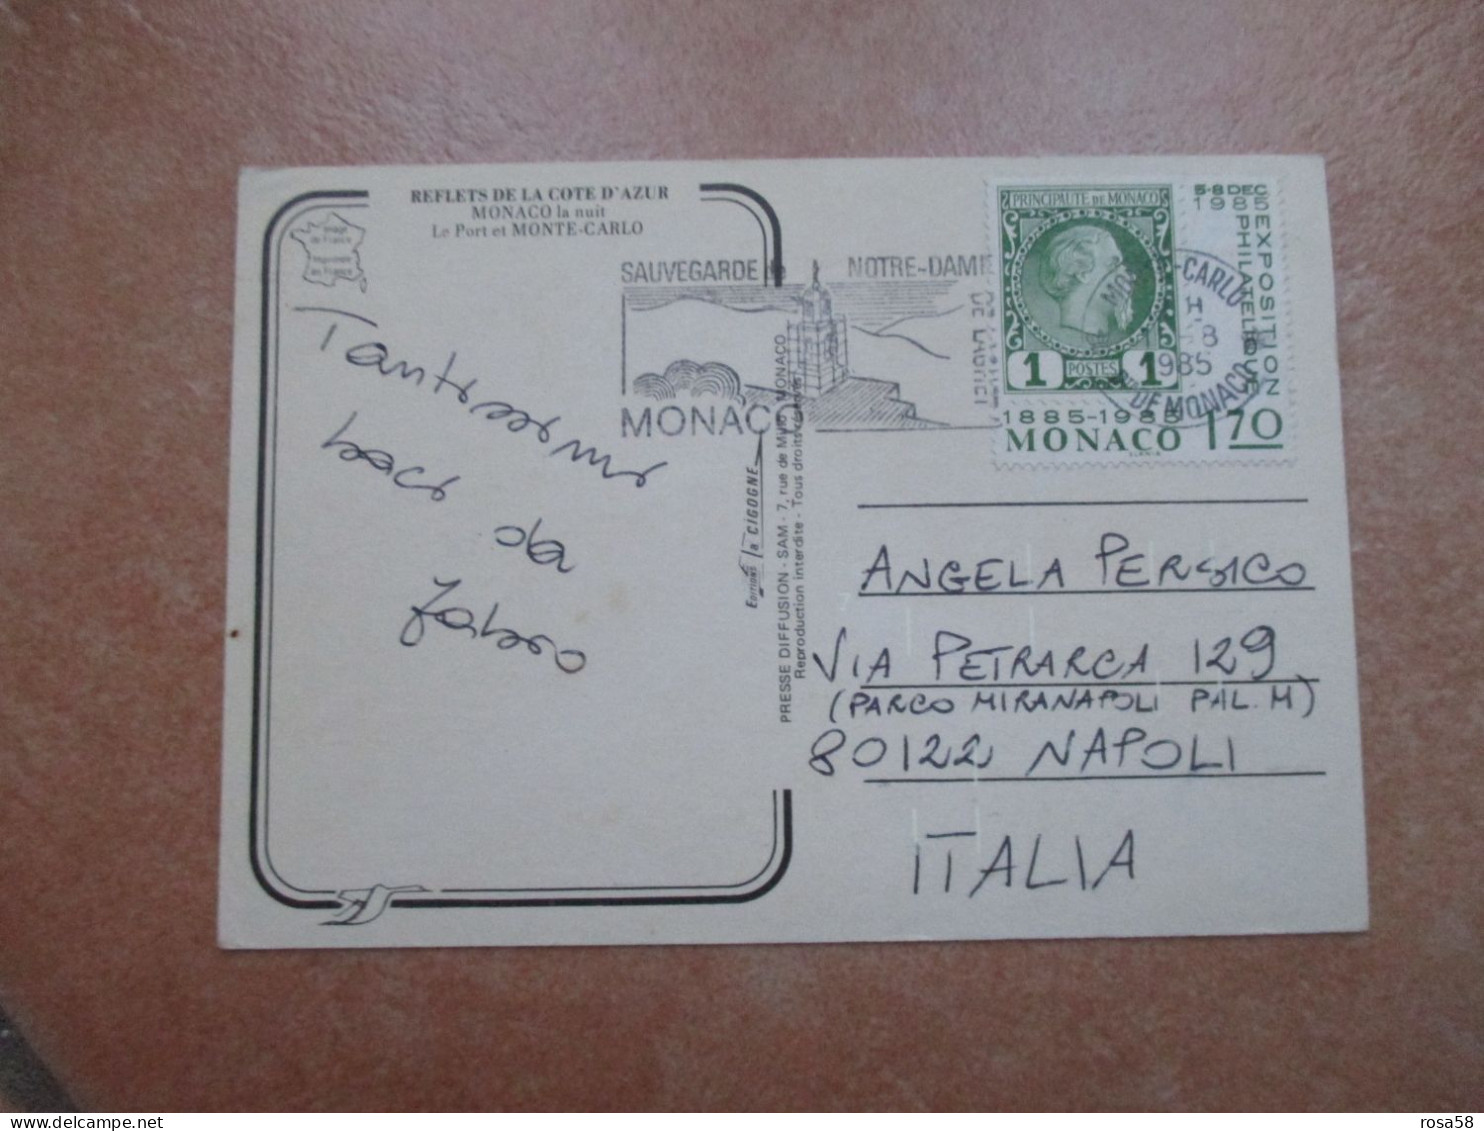 1985 Annullo Meccanico SAUVEGARDE Notre Dame Su F.bollo 1,70 1885 1985 - Storia Postale